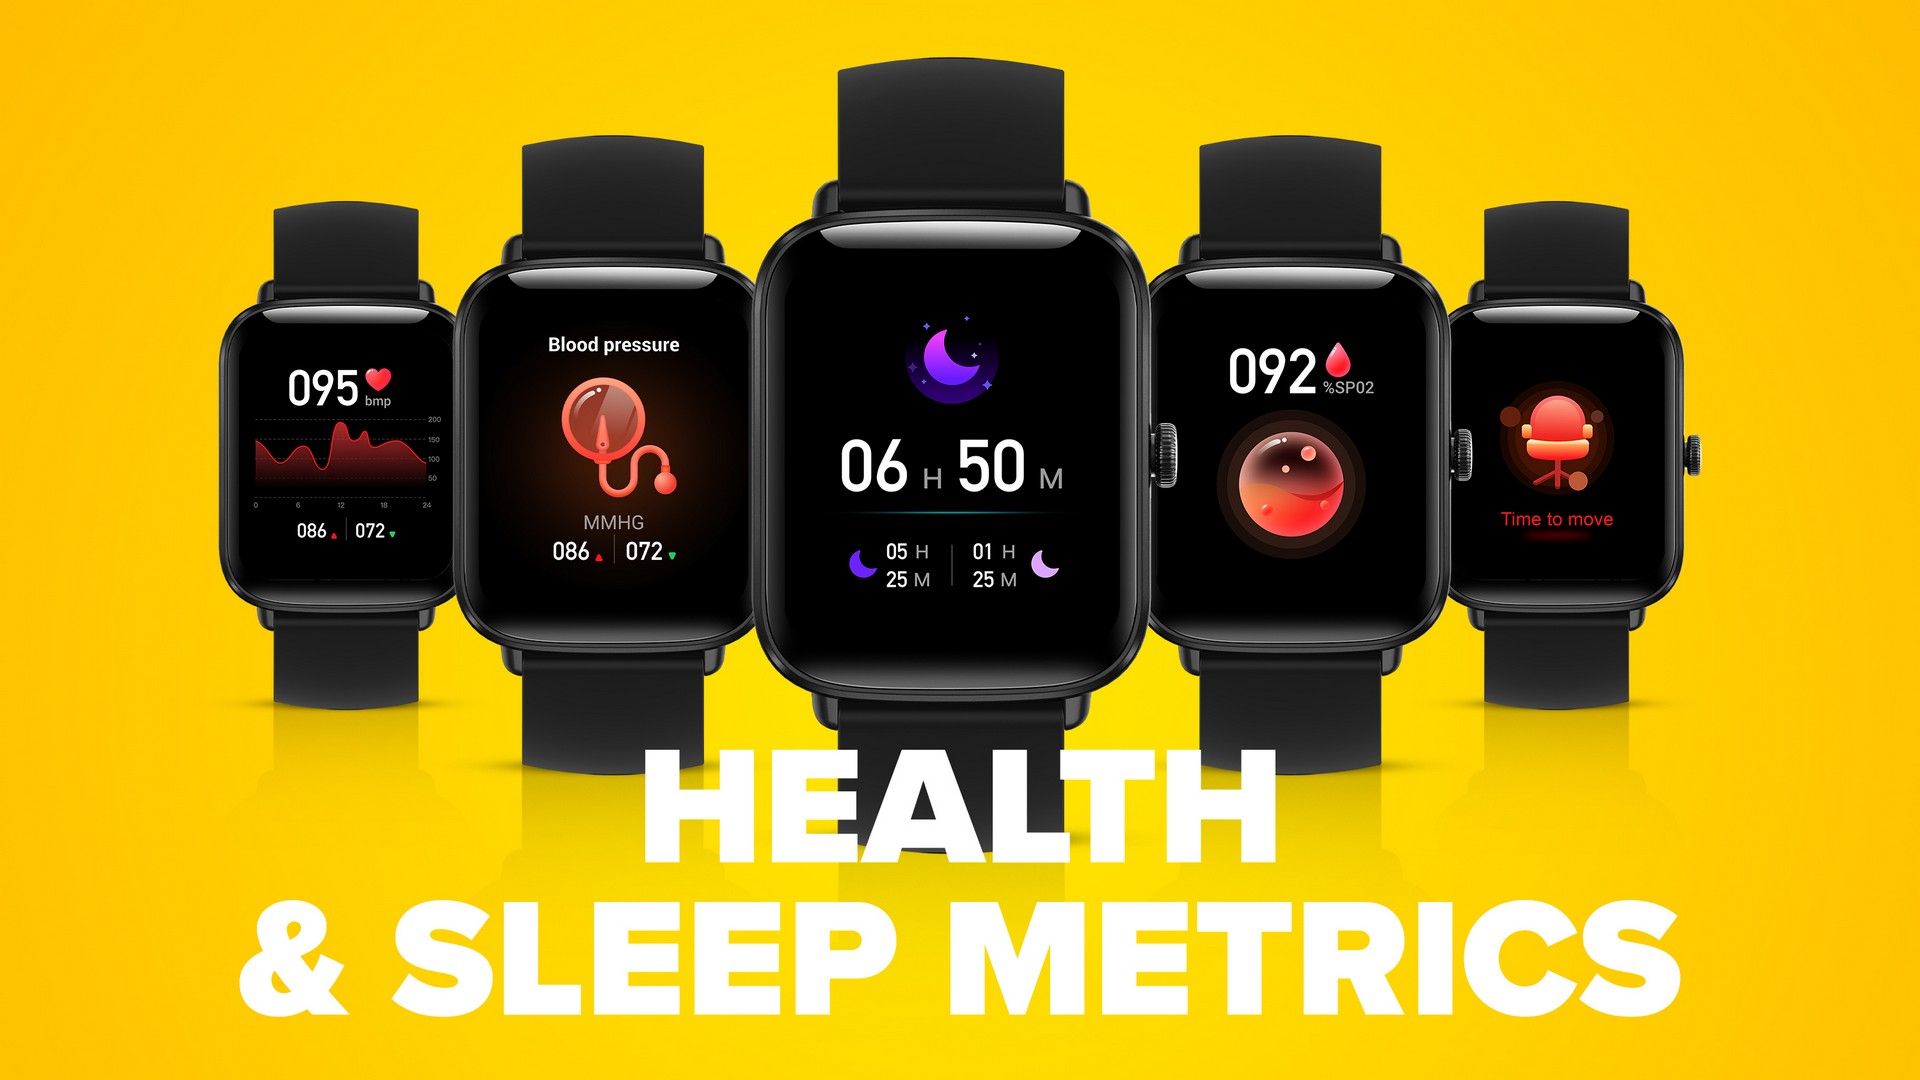 Chytré hodinky Niceboy X-Fit Watch Lite 3 hlídají, kolik hodin jste spali, zdali se nacházíte ve fází lehkého, hlubokého nebo REM spánku i jak byl váš spánek kvalitní.